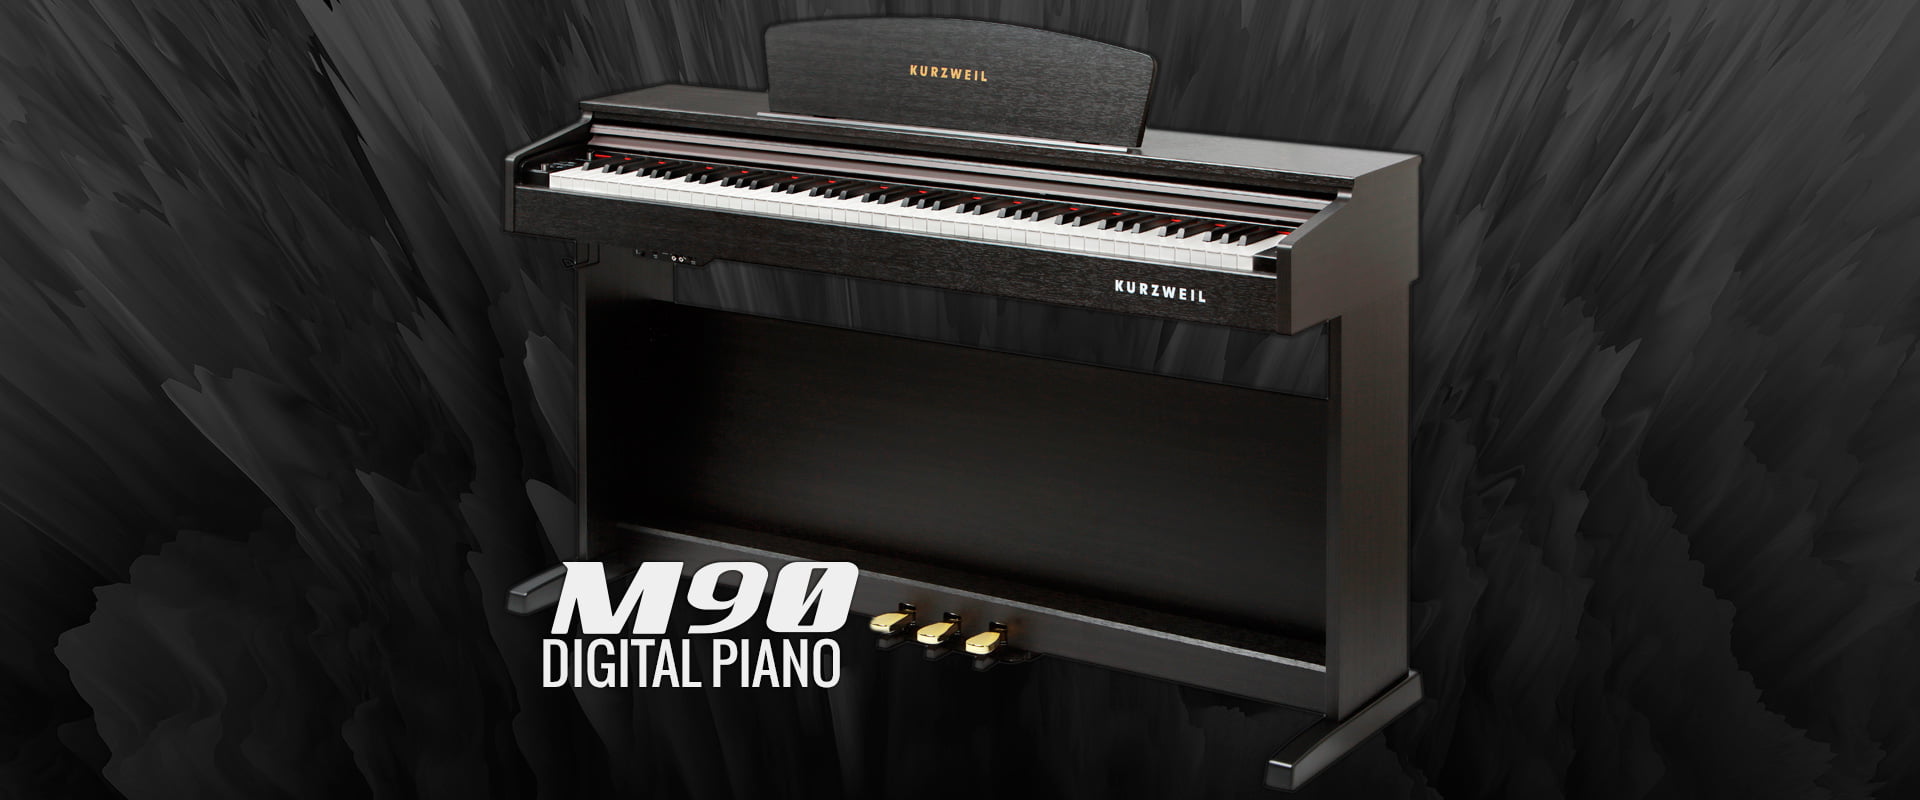 پیانوی-دیجیتال-KURZWEIL-M90